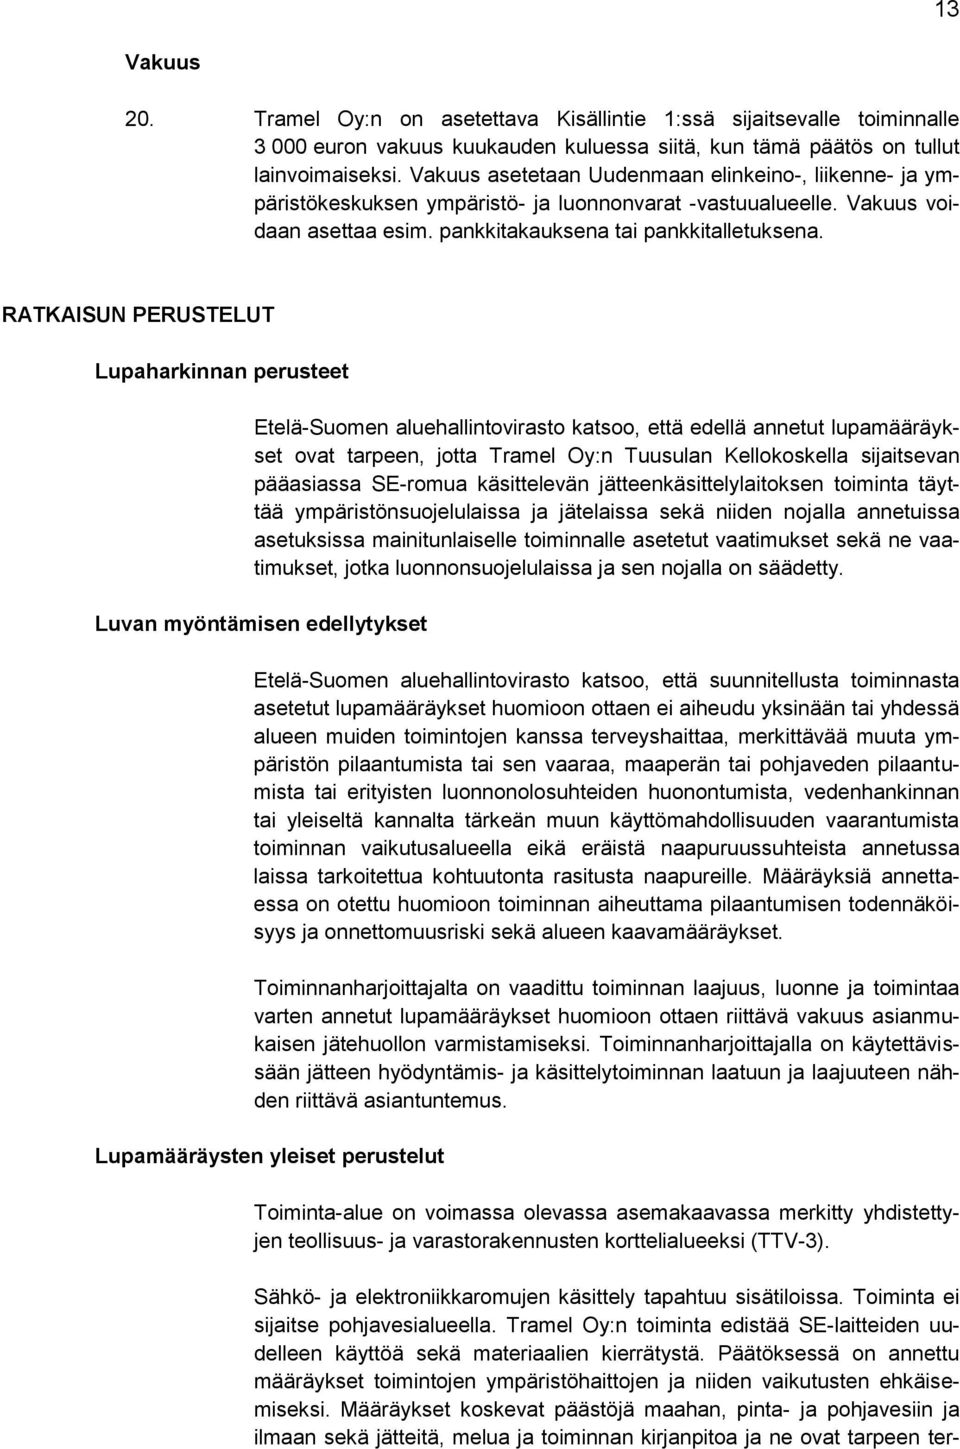 RATKAISUN PERUSTELUT Lupaharkinnan perusteet Etelä-Suomen aluehallintovirasto katsoo, että edellä annetut lupamääräykset ovat tarpeen, jotta Tramel Oy:n Tuusulan Kellokoskella sijaitsevan pääasiassa